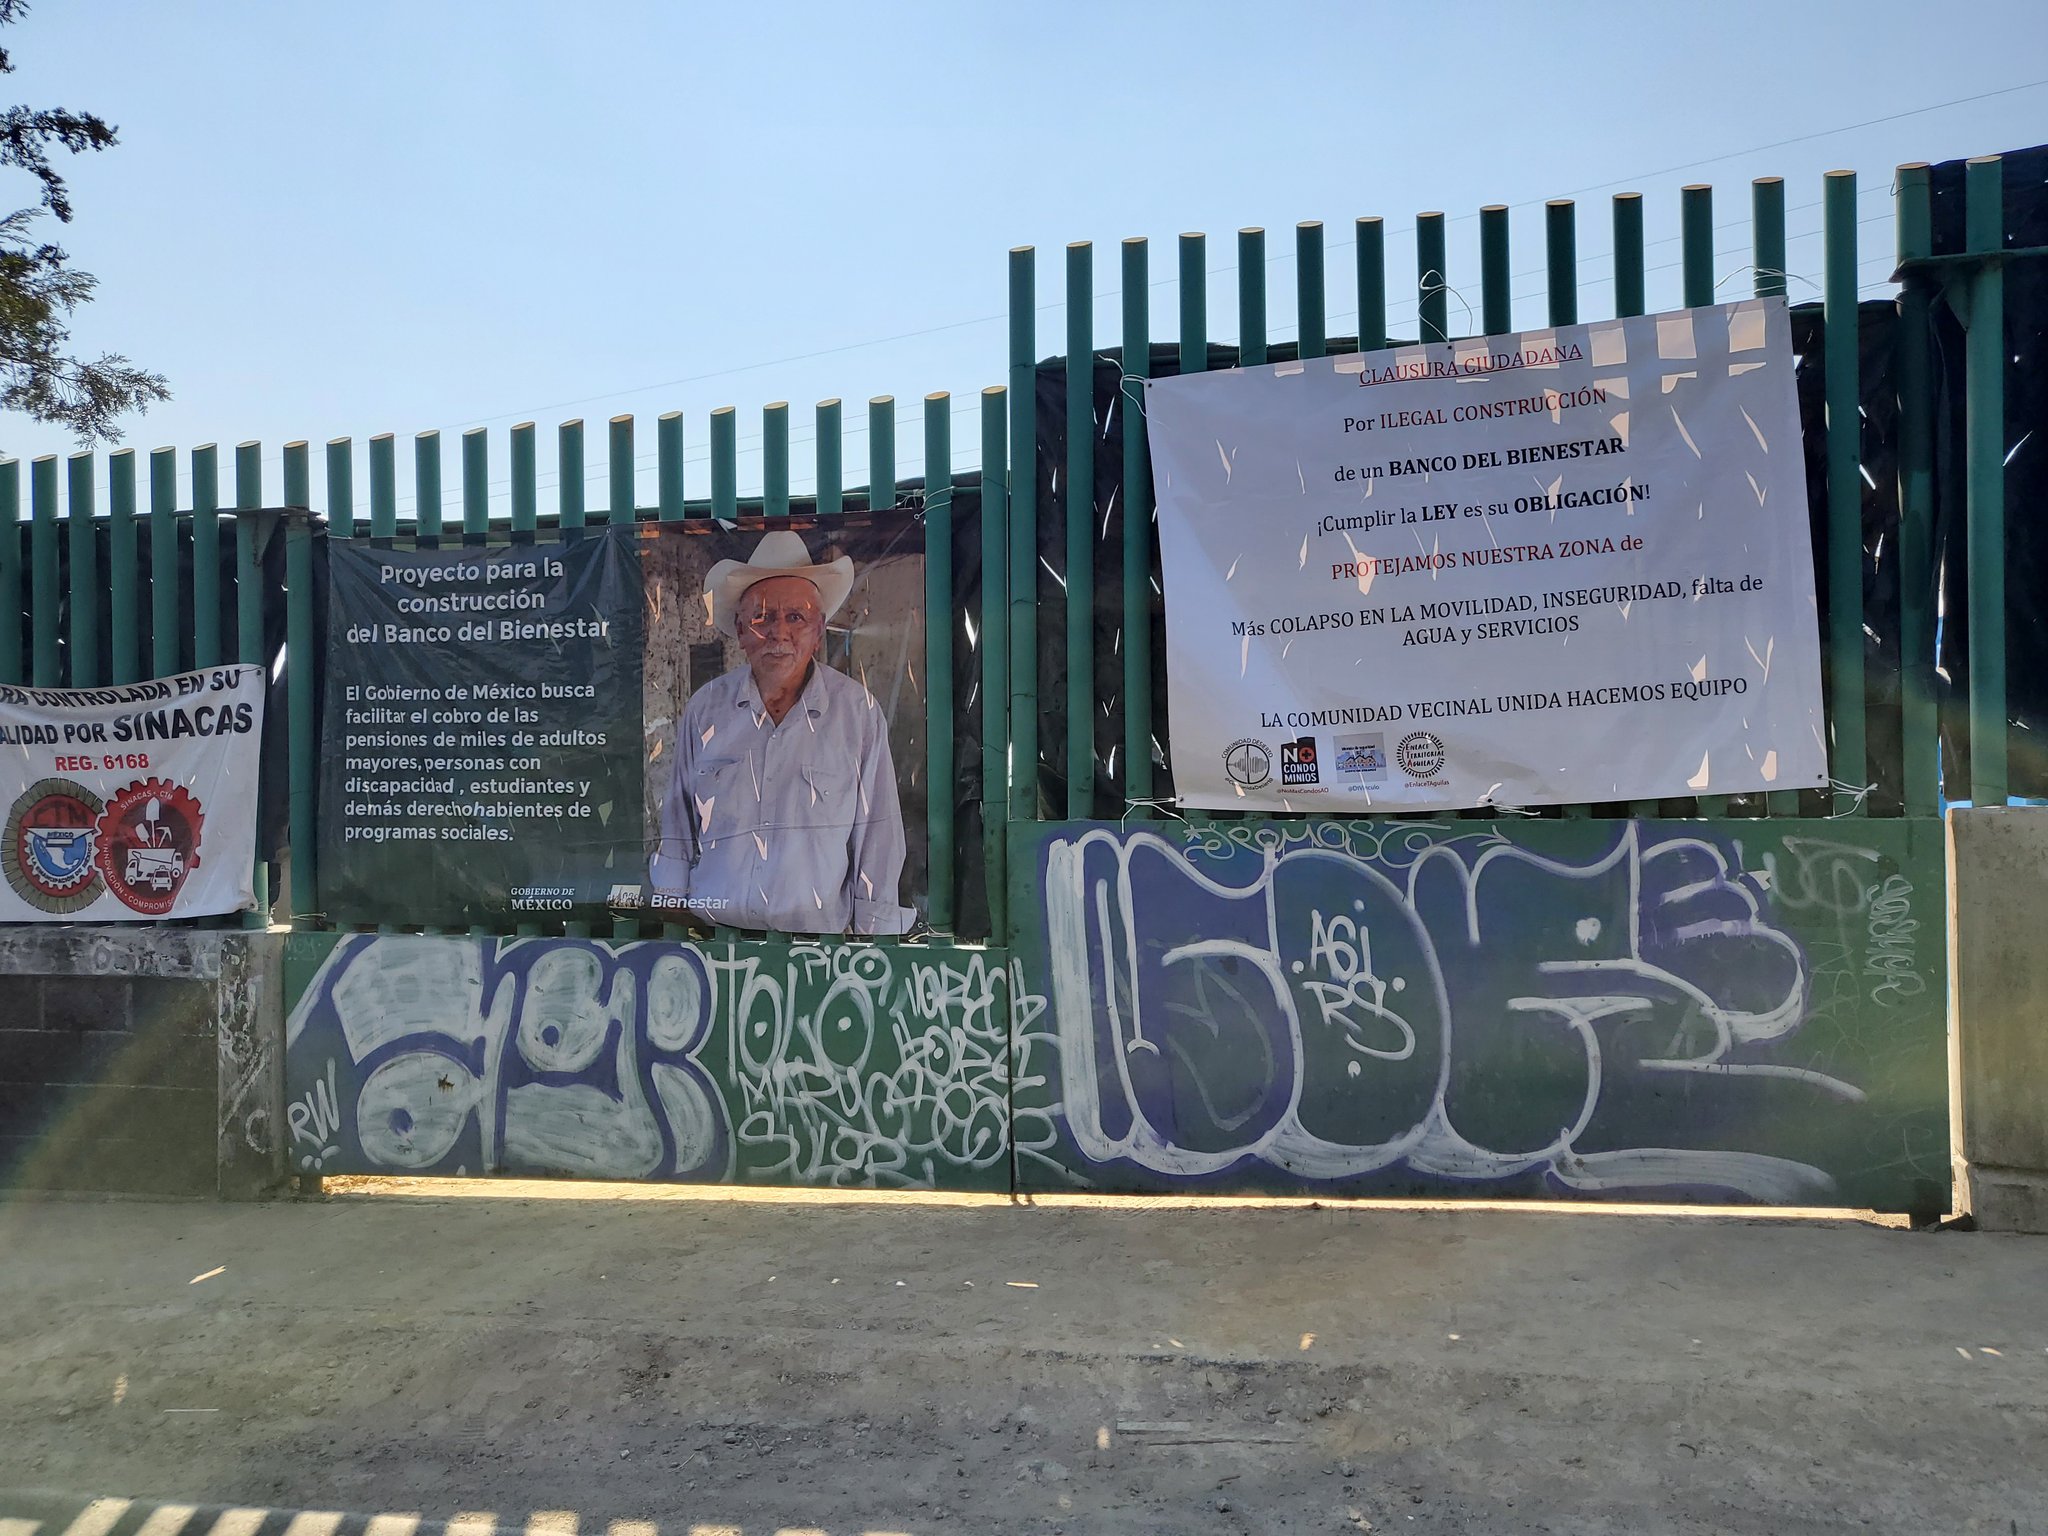 Un grupo de vecinos de la alcaldía Álvaro Obregón pide la reubicación de las obras de construcción del Banco del Bienestar en la zona | Foto: Twitter @ComunidadDesier2